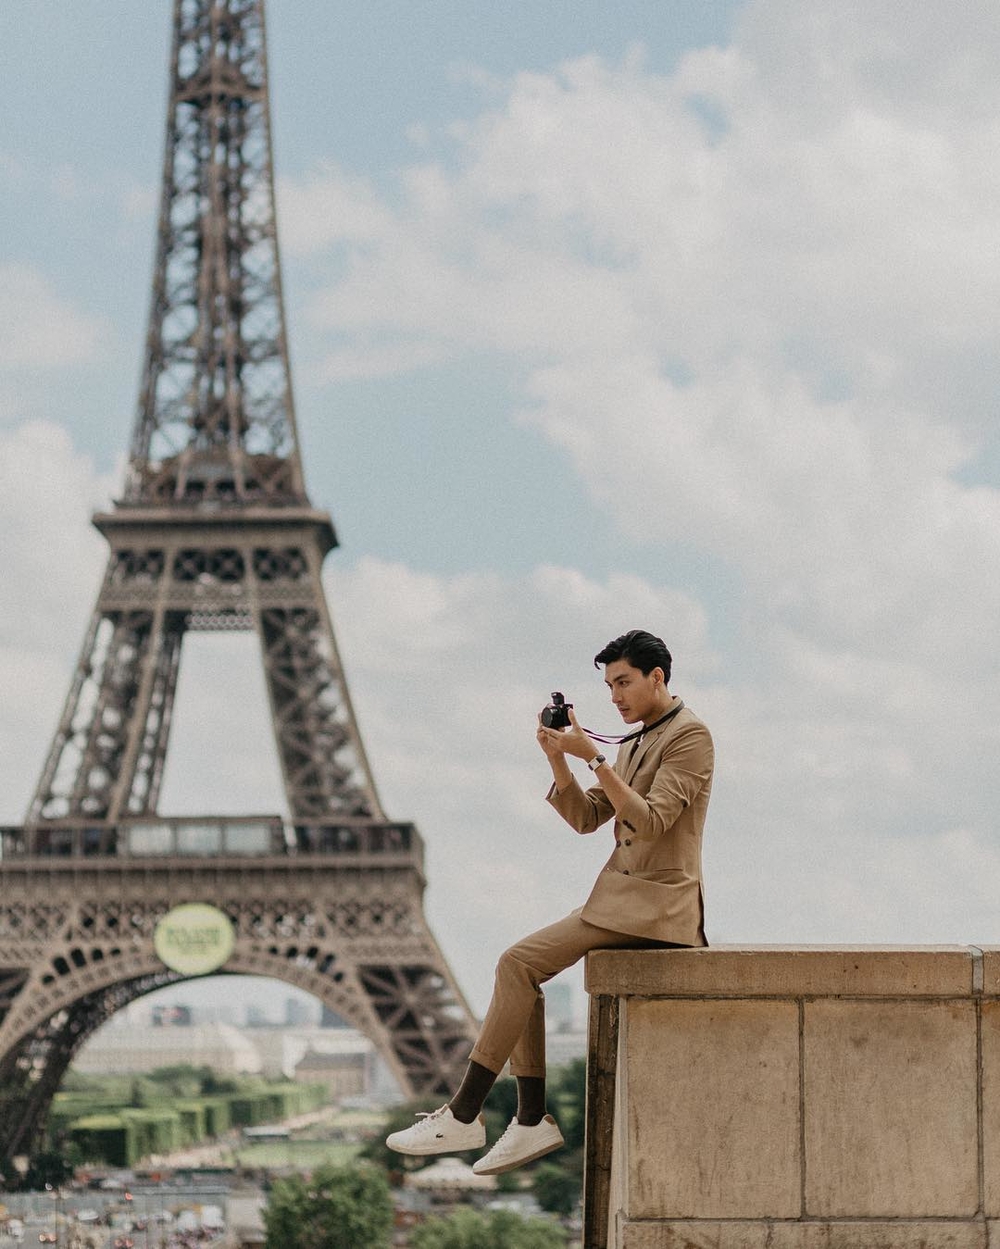 
Lên một set đồ đậm chất quý ông lịch lãm - nét đẹp đầy thu hút nơi chàng mẫu này trong chuyến vi vu viếng thăm thành phố Pháp tráng lệ.